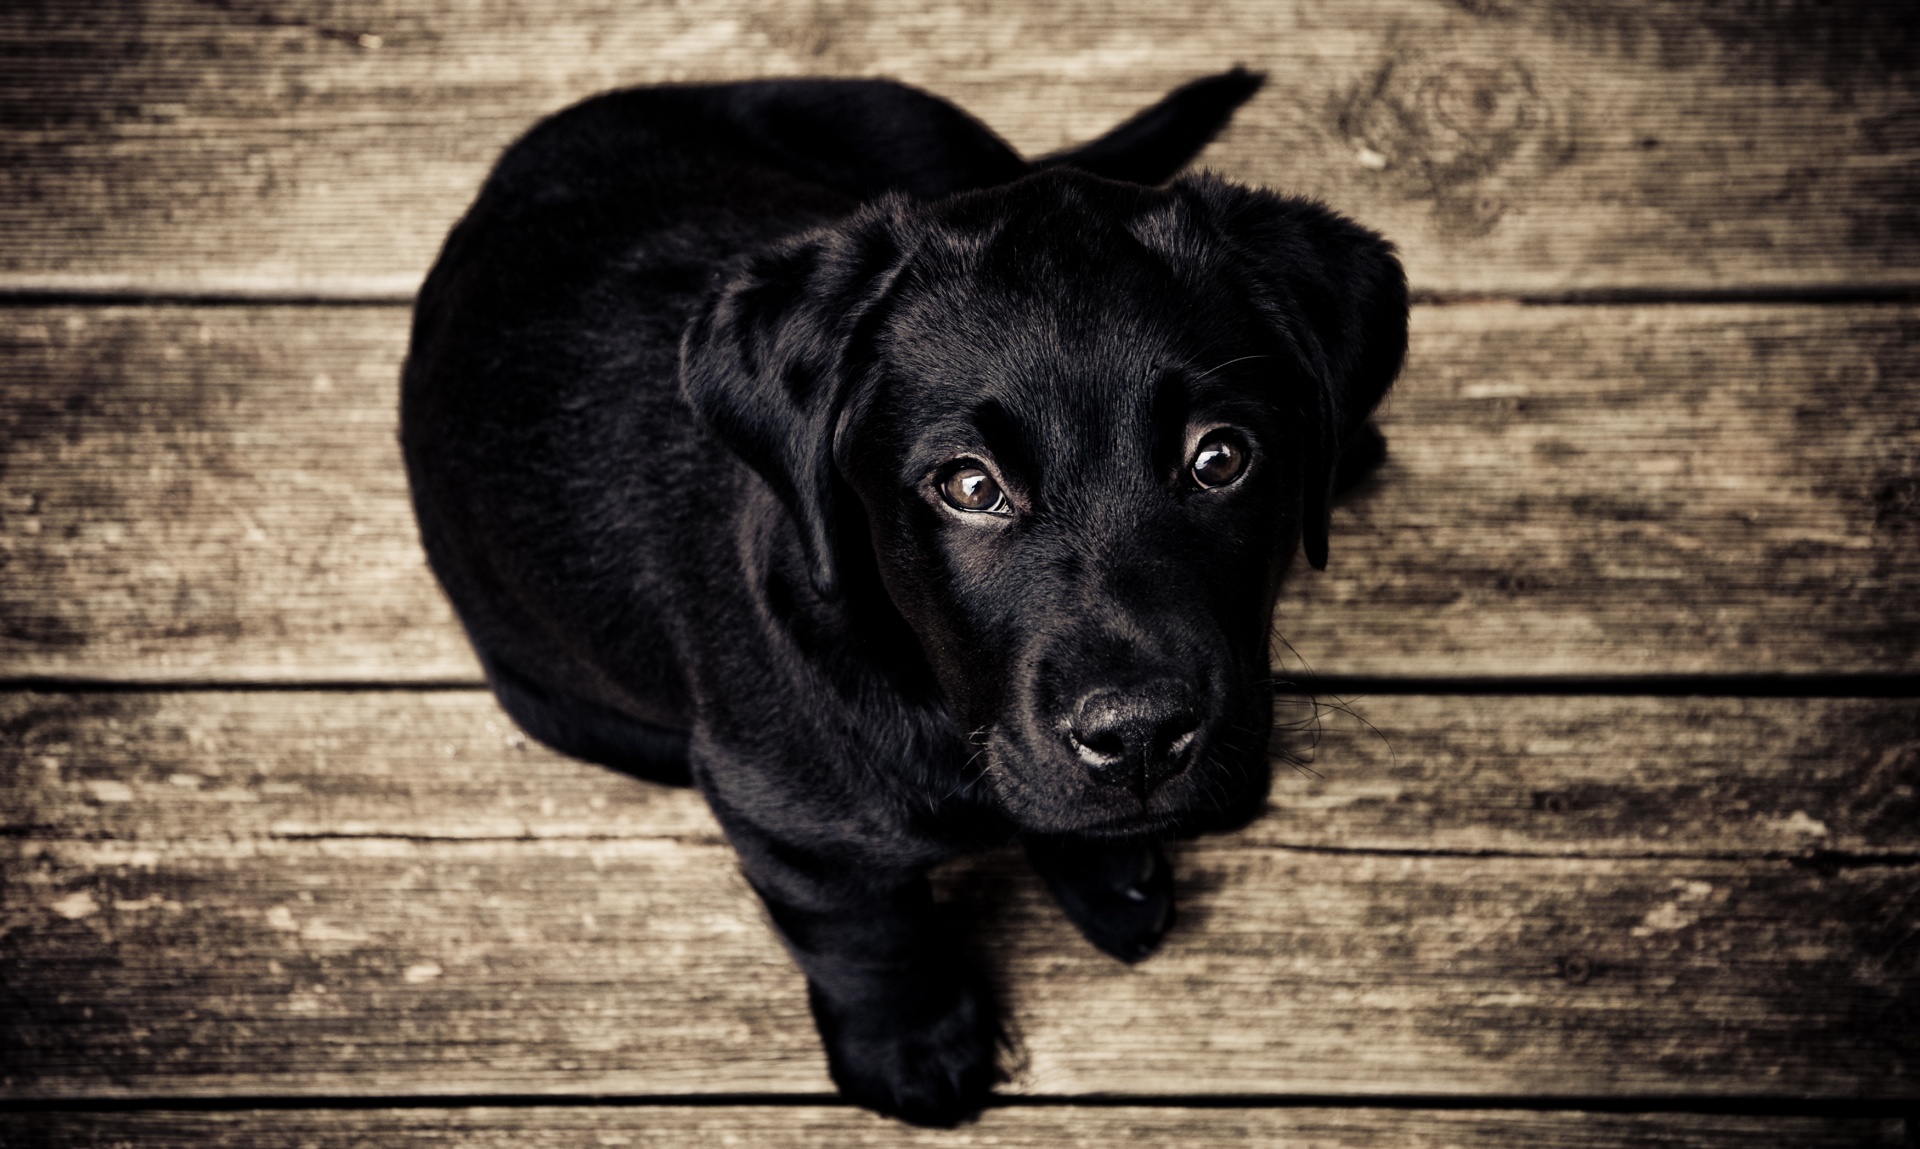 constant loterij Spit Zwarte labrador puppy Gratis Stock Foto - Public Domain Pictures